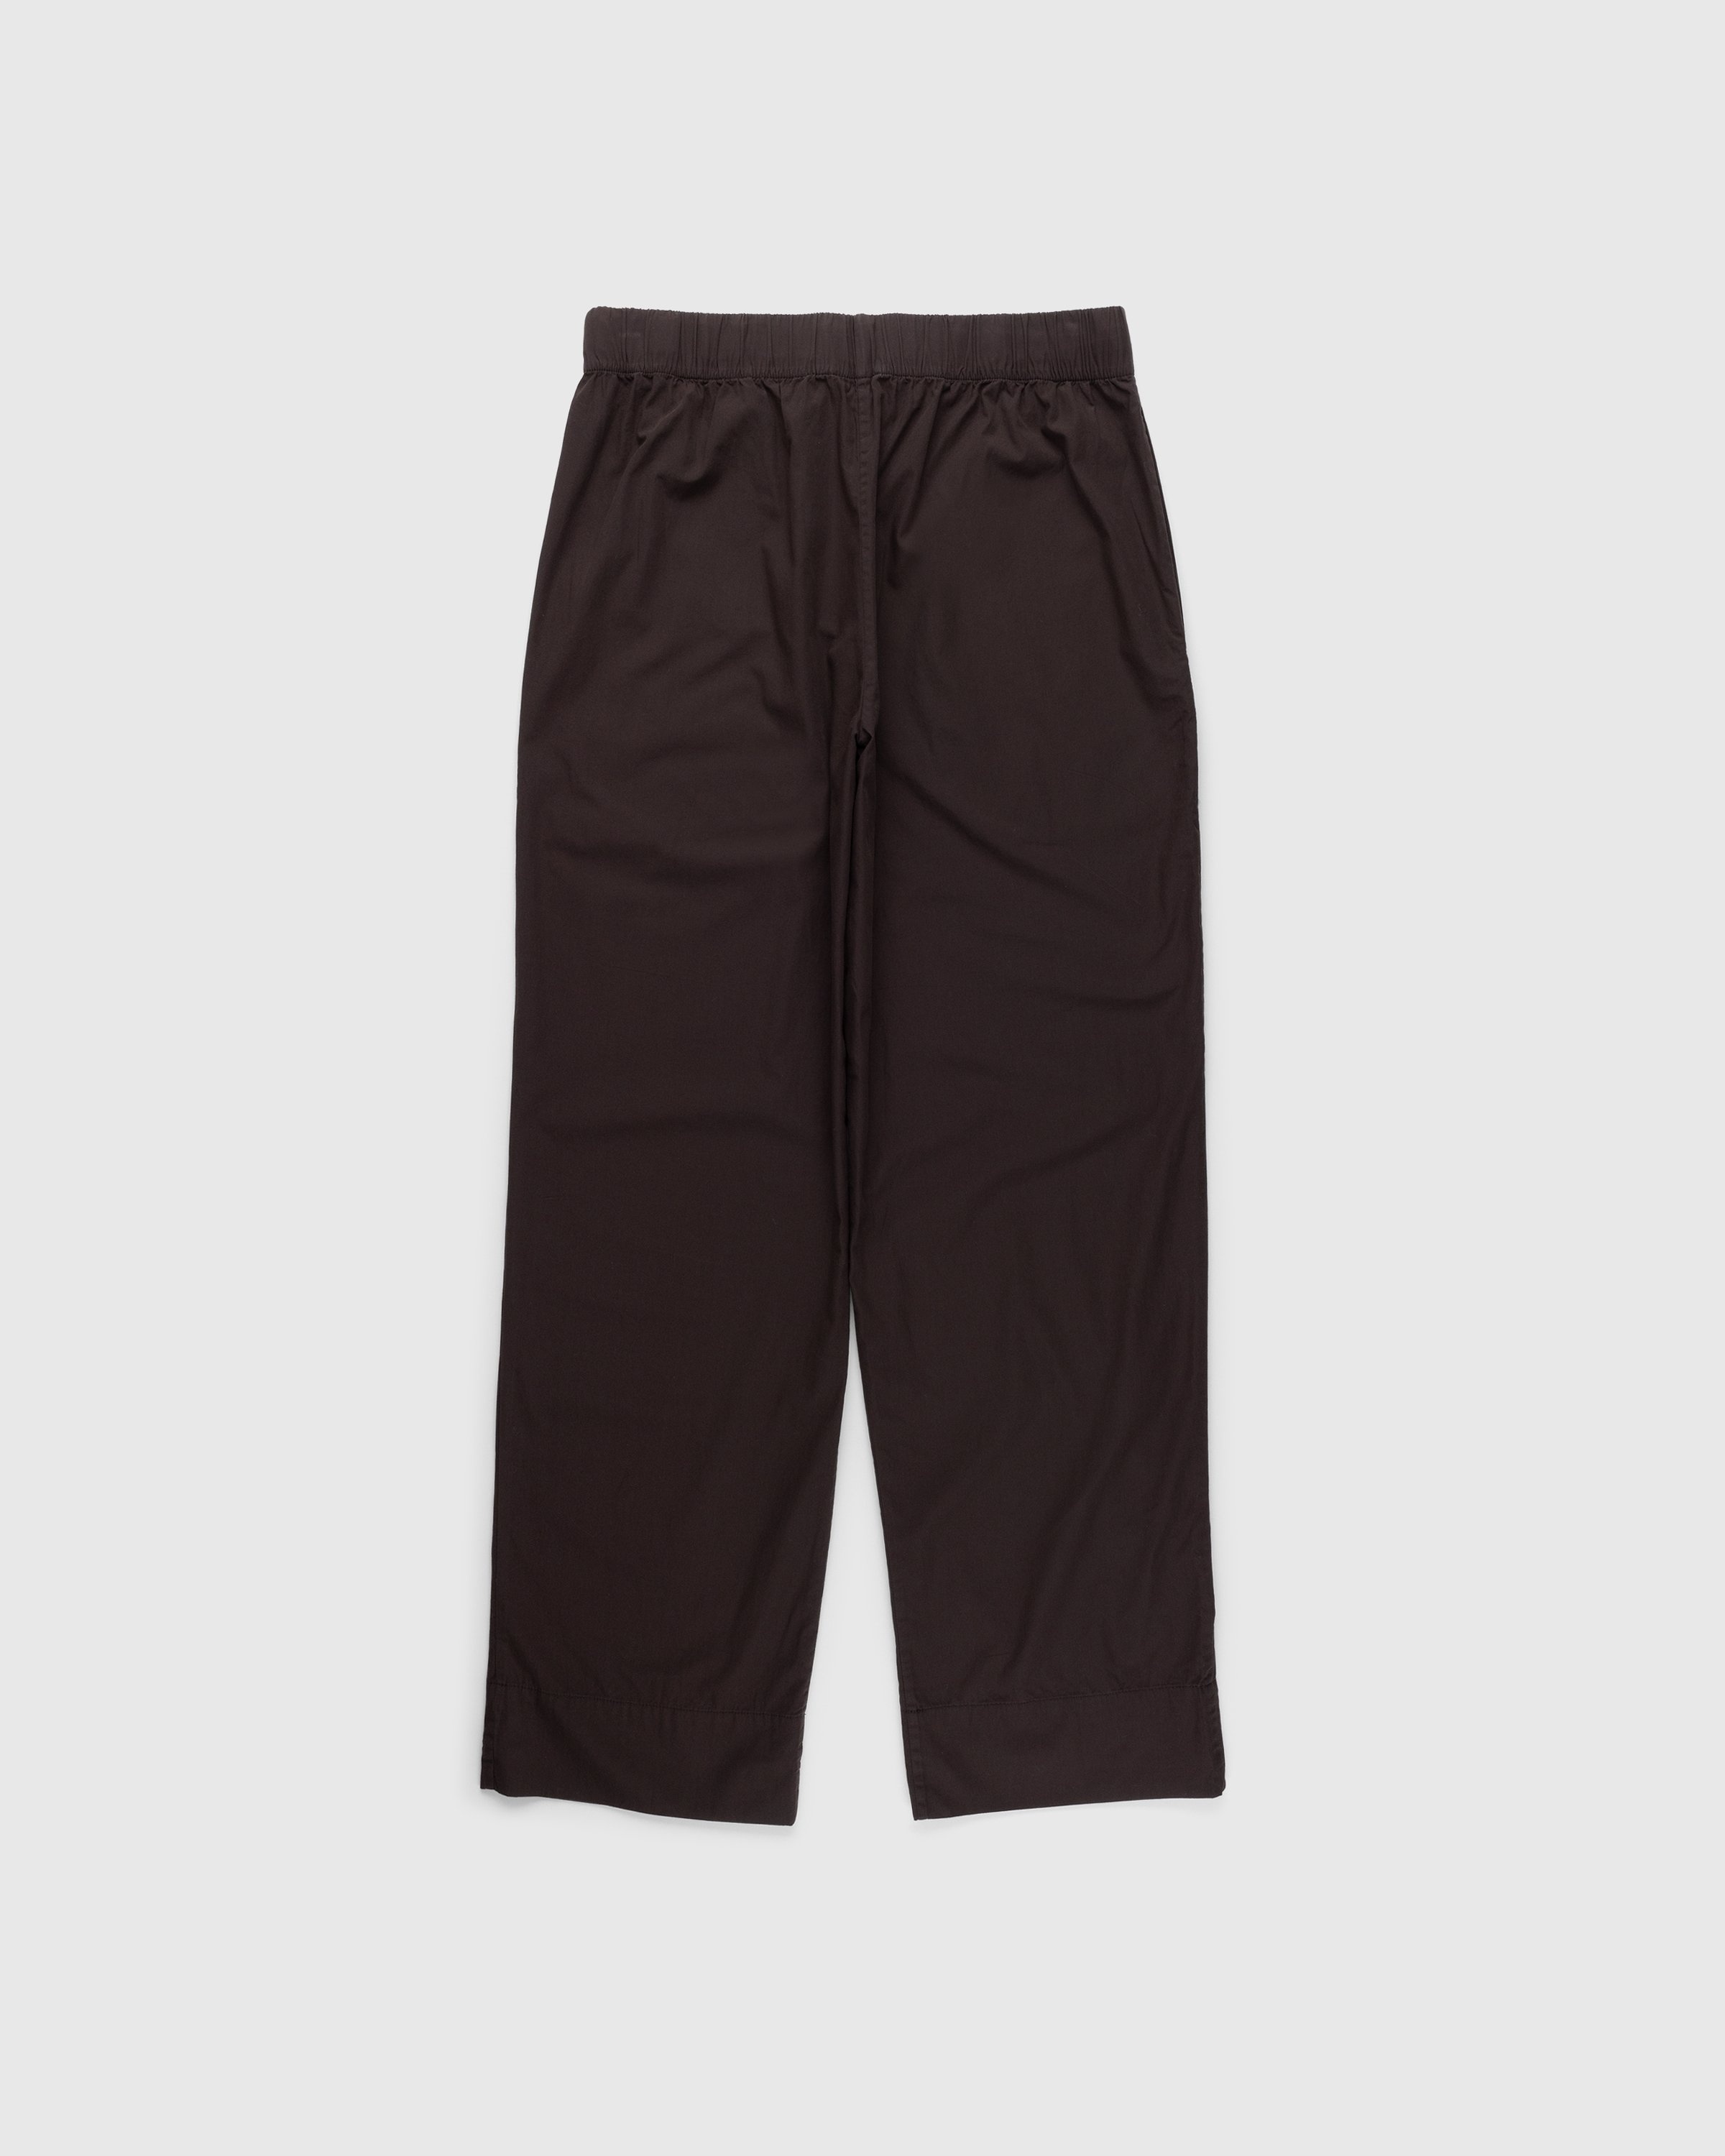 Tekla – Cotton Poplin Pyjamas Pants Coffee - Pyjamas - Brown - Image 2